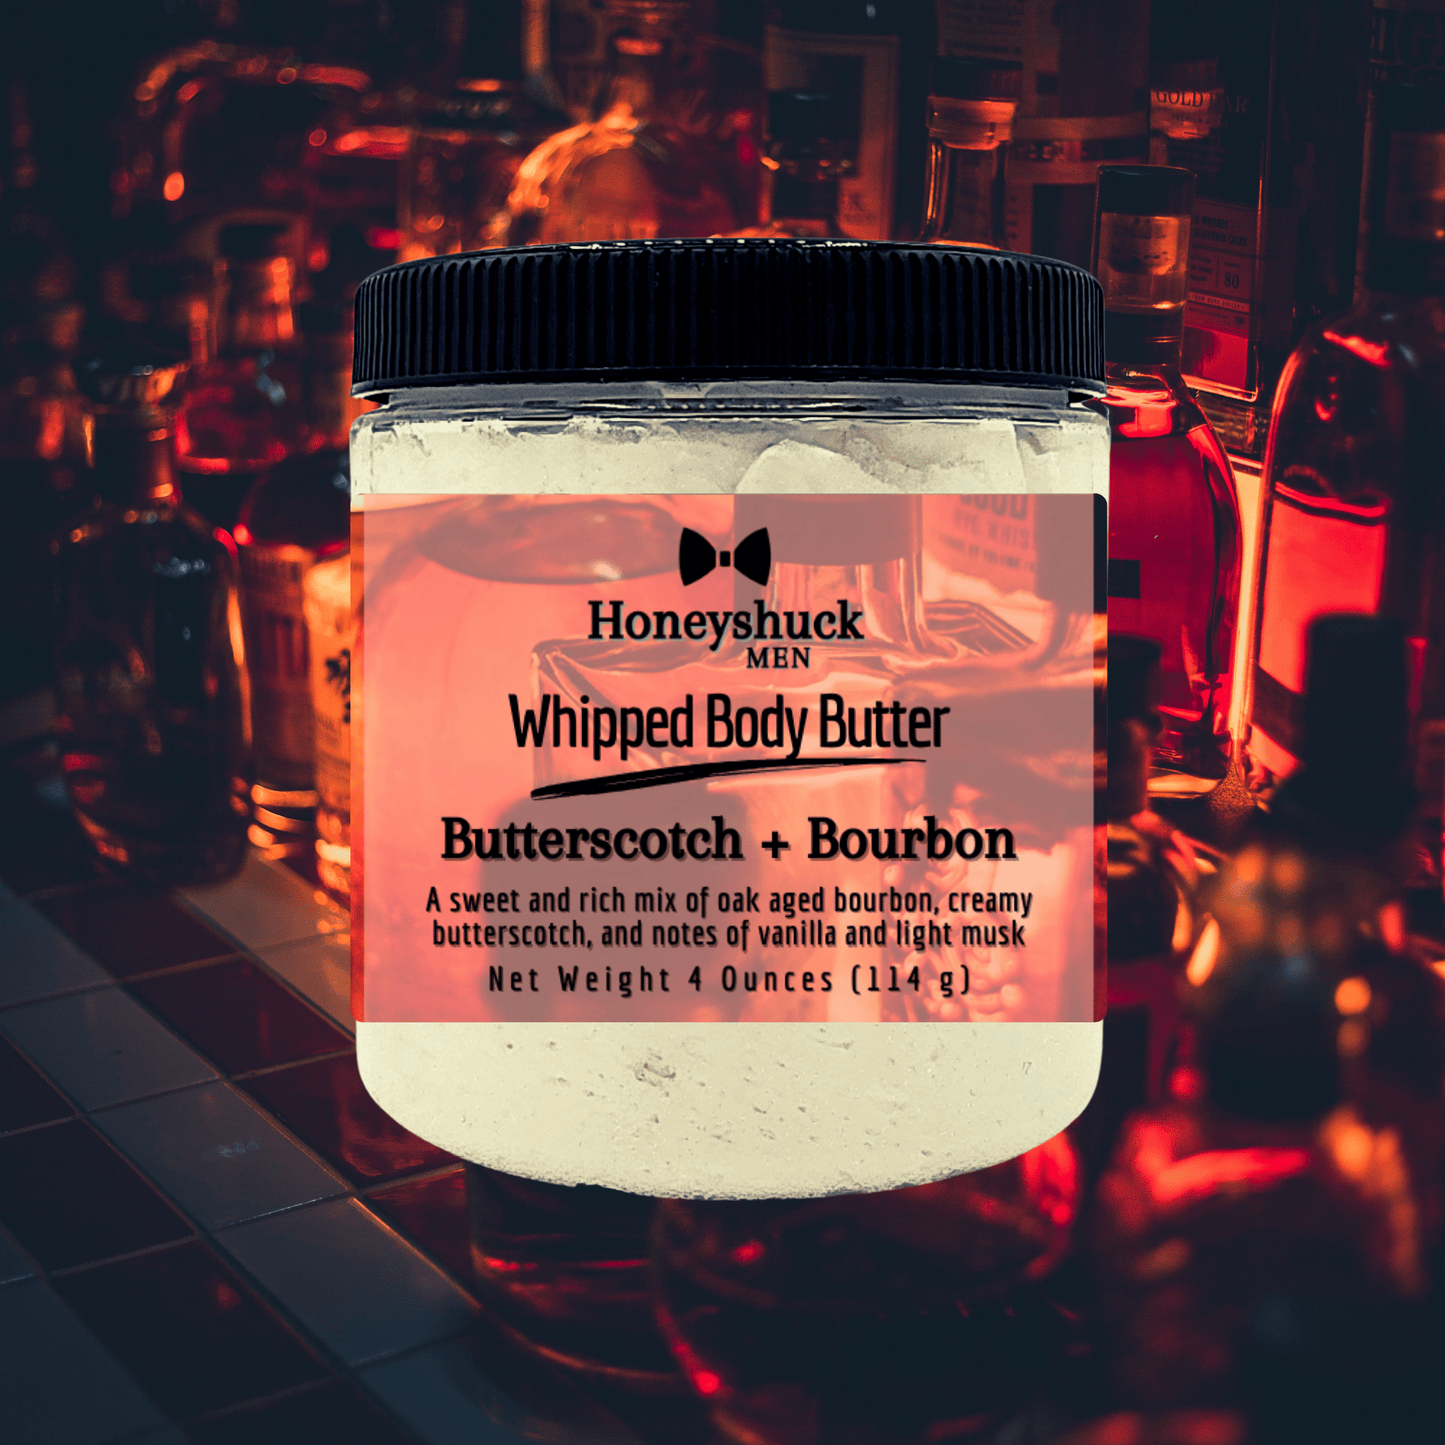 Men's Whipped Body Butter | Butterscotch + Bourbon | Vegan